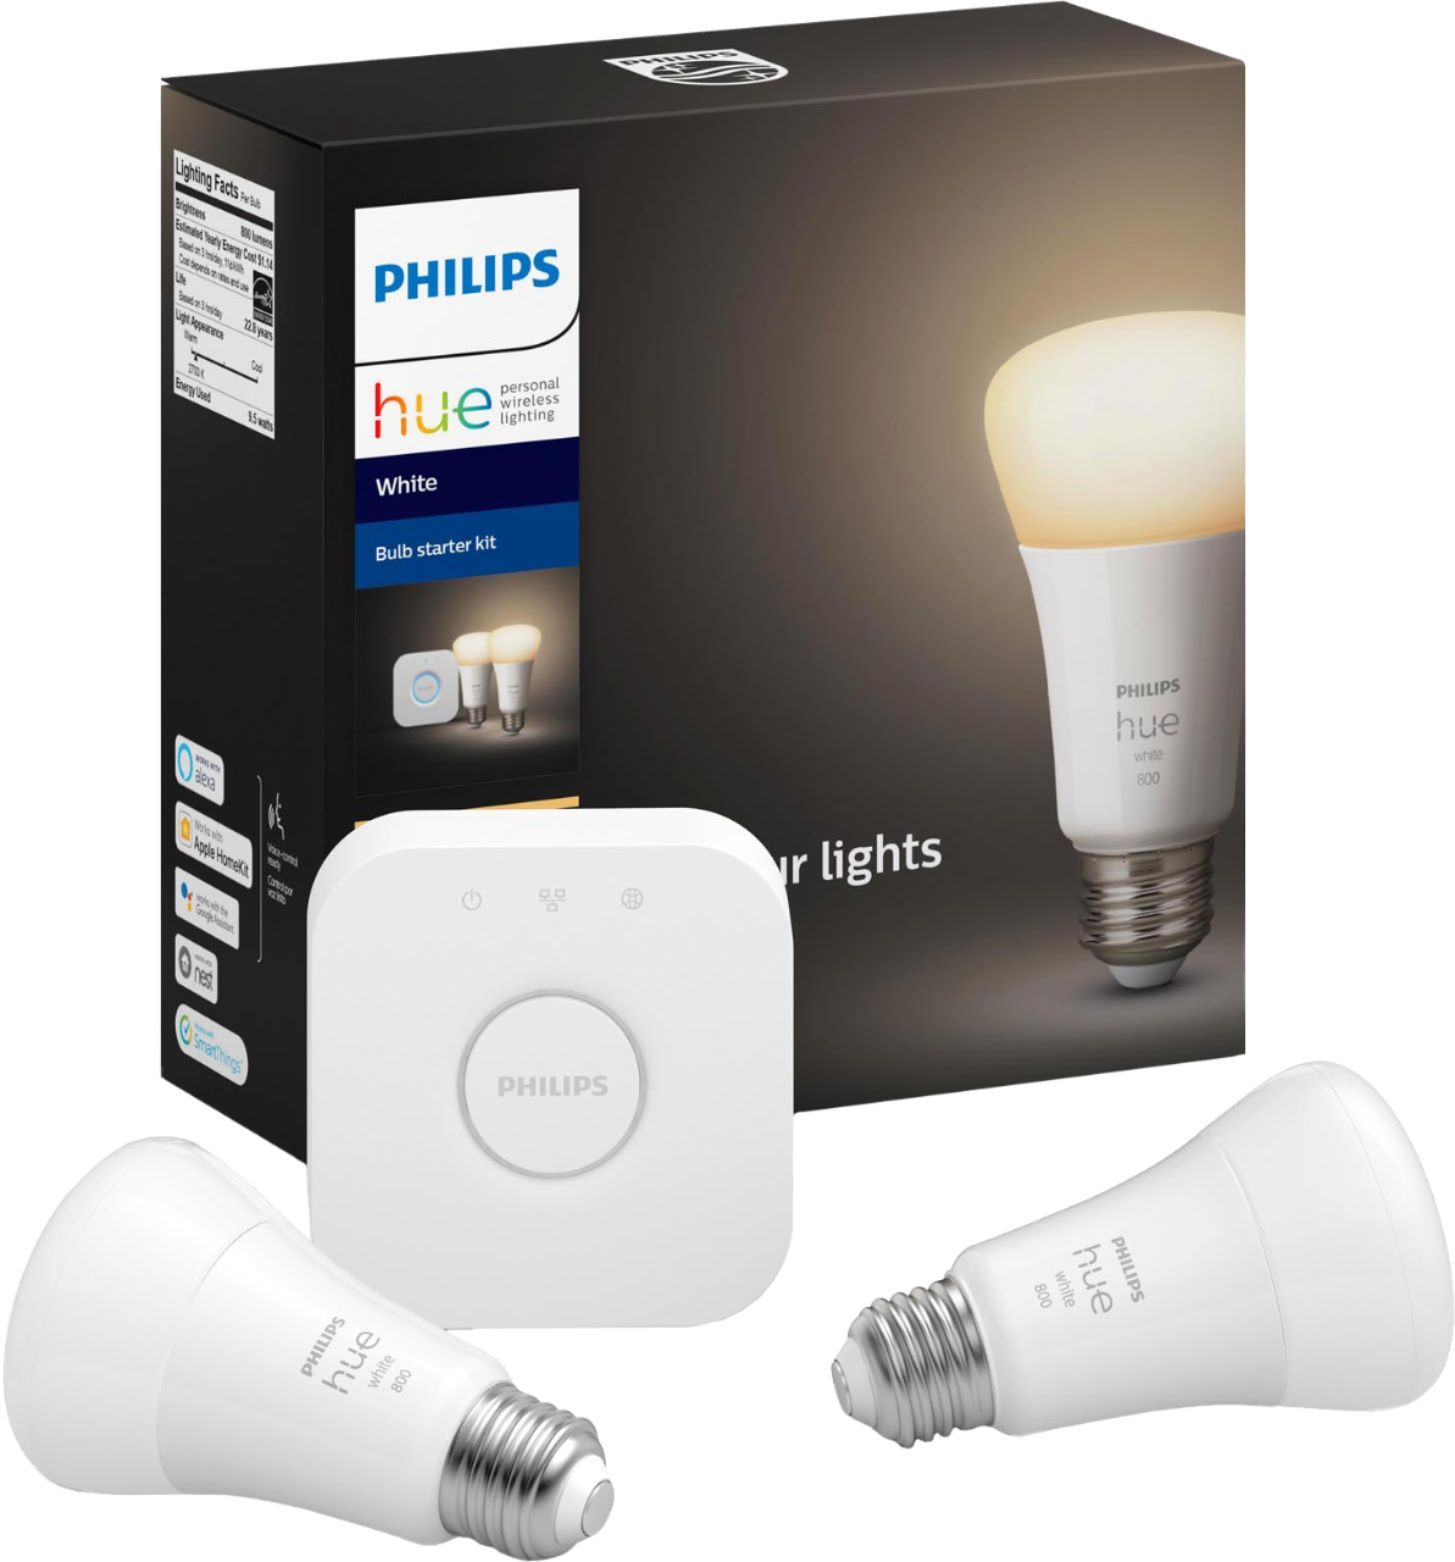 Philips Hue Bluetooth White A19 60W LED Bulbs 2 Pack Starter Kit White 476929 - Best Buy | Best Buy U.S.